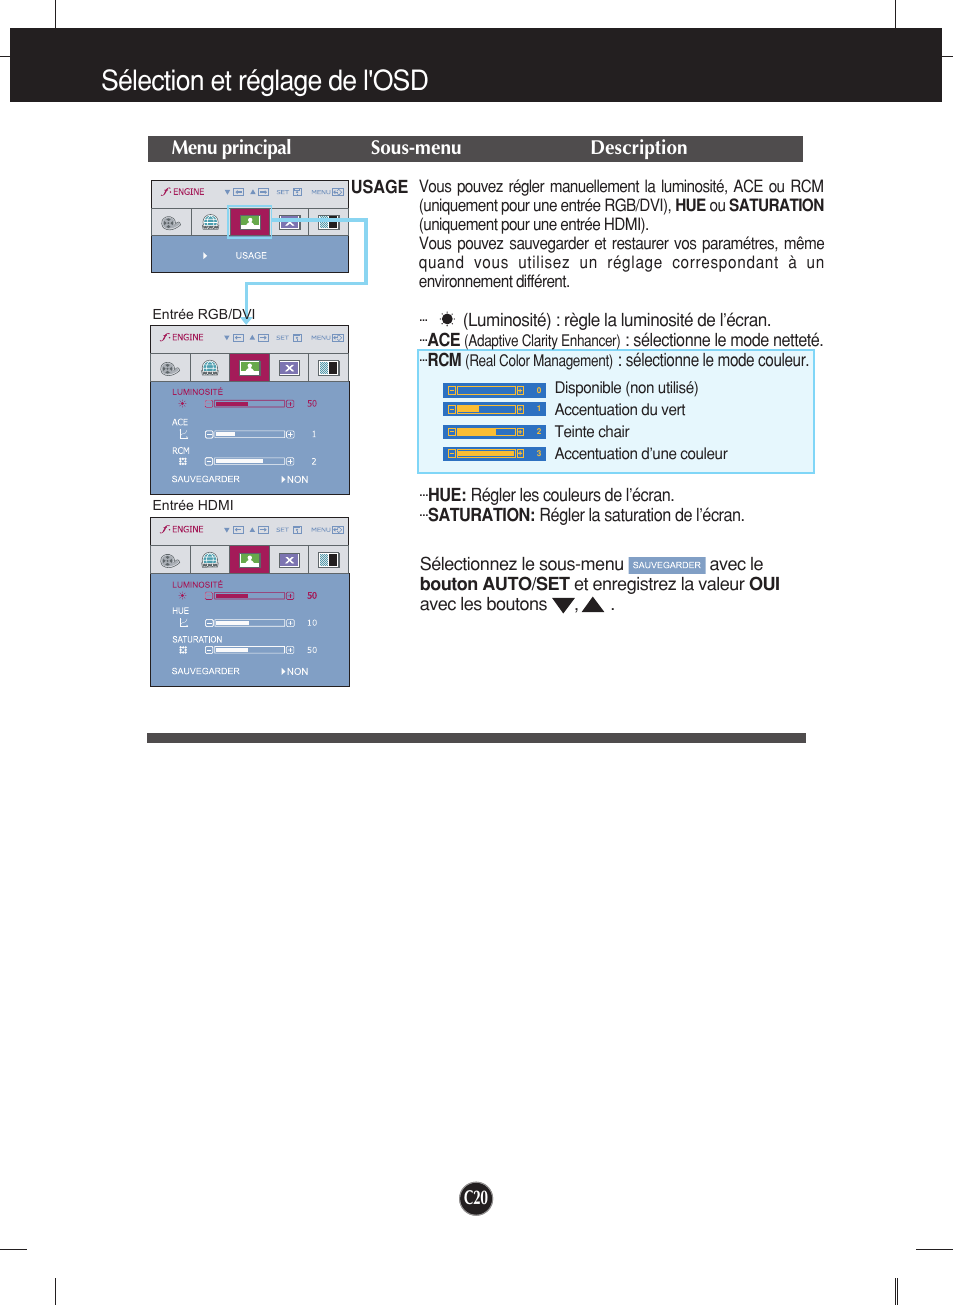 Sélection et réglage de l'osd, Menu principal sous-menu description | LG W2452V-PF Manuel d'utilisation | Page 21 / 27